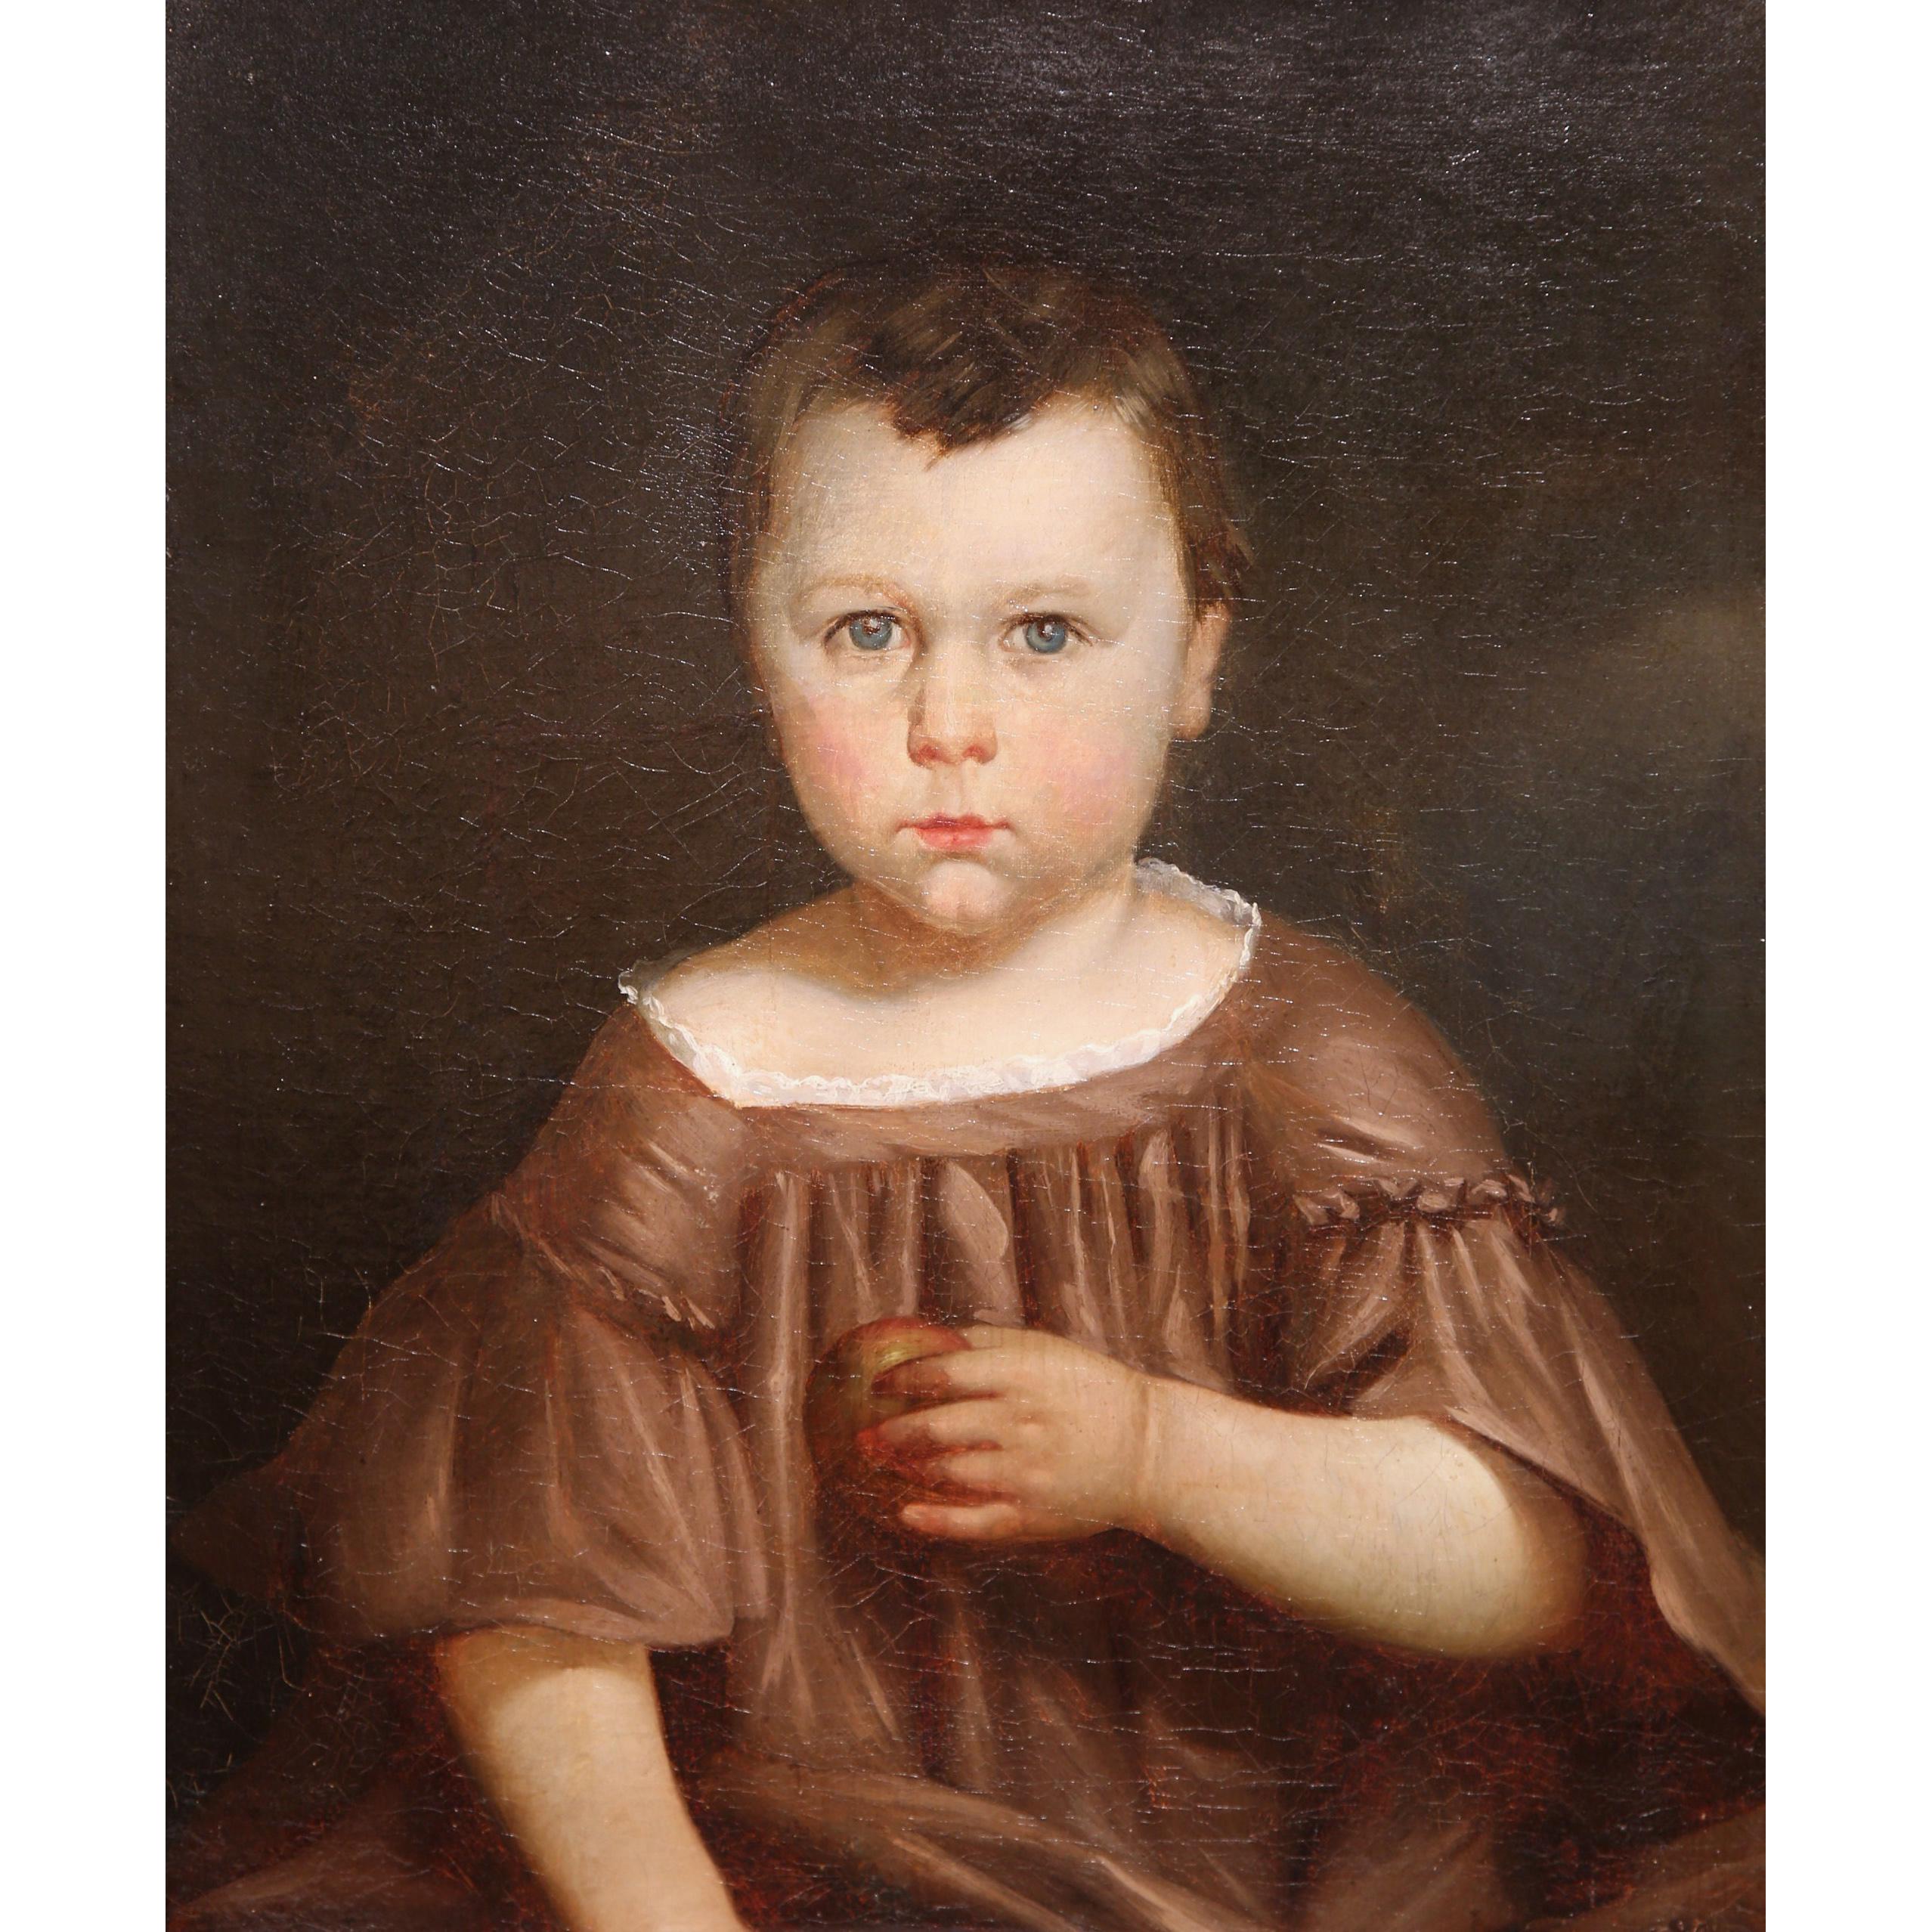 Cette huile sur toile très détaillée a été créée en France vers 1820. Situé dans son cadre doré sculpté d'origine, le portrait représente un jeune garçon en tenue traditionnelle tenant une pomme dans sa main gauche. Le personnage a un regard fort et